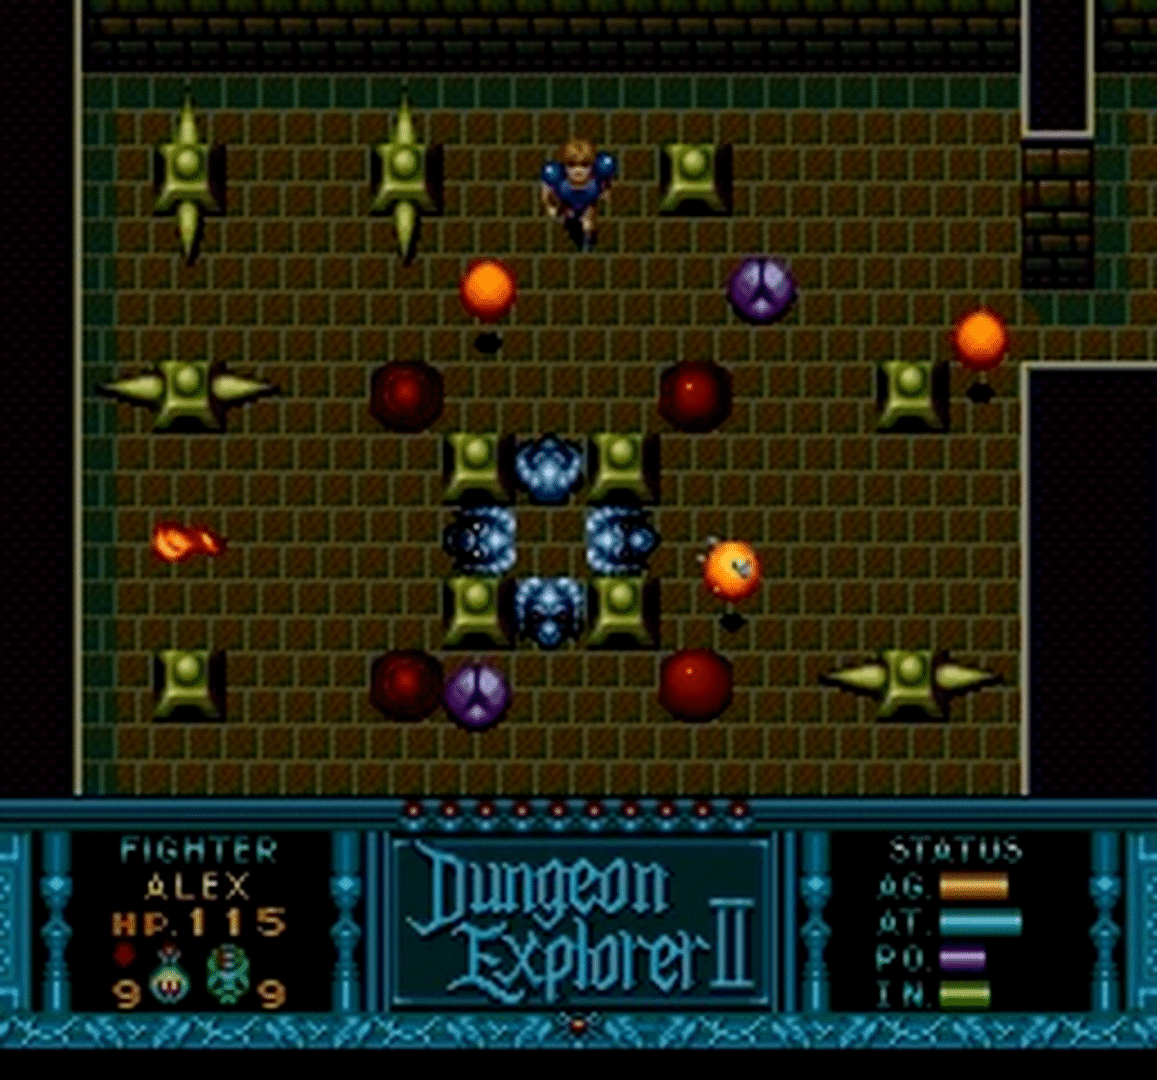 Dungeon Explorer II screenshot